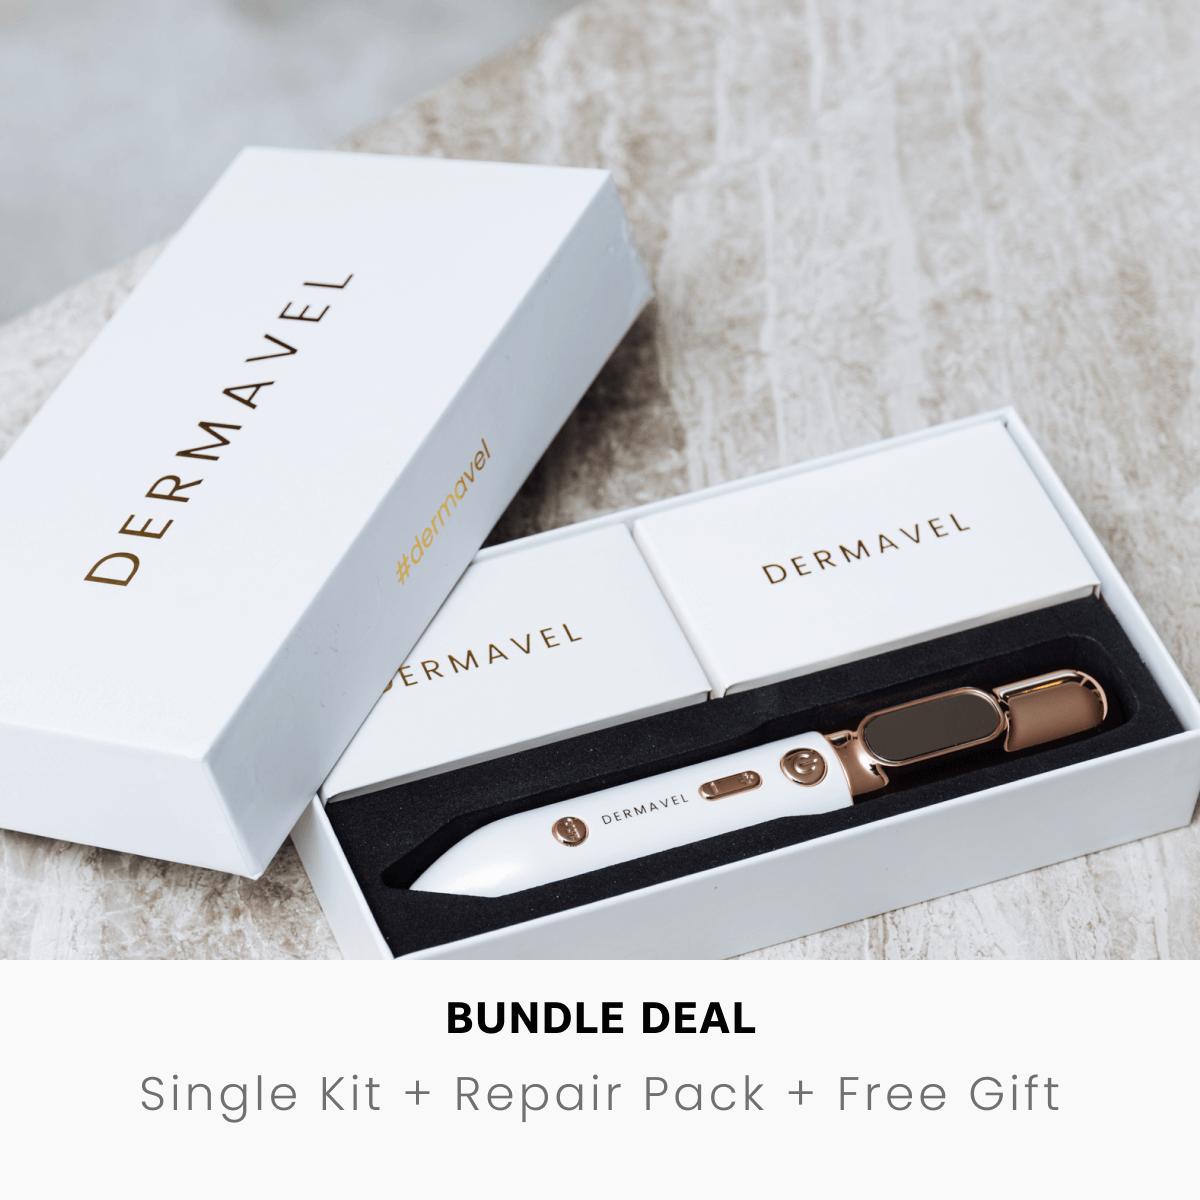 Bundle Deal: Single Kit + Repair Pack + Free Guidebook